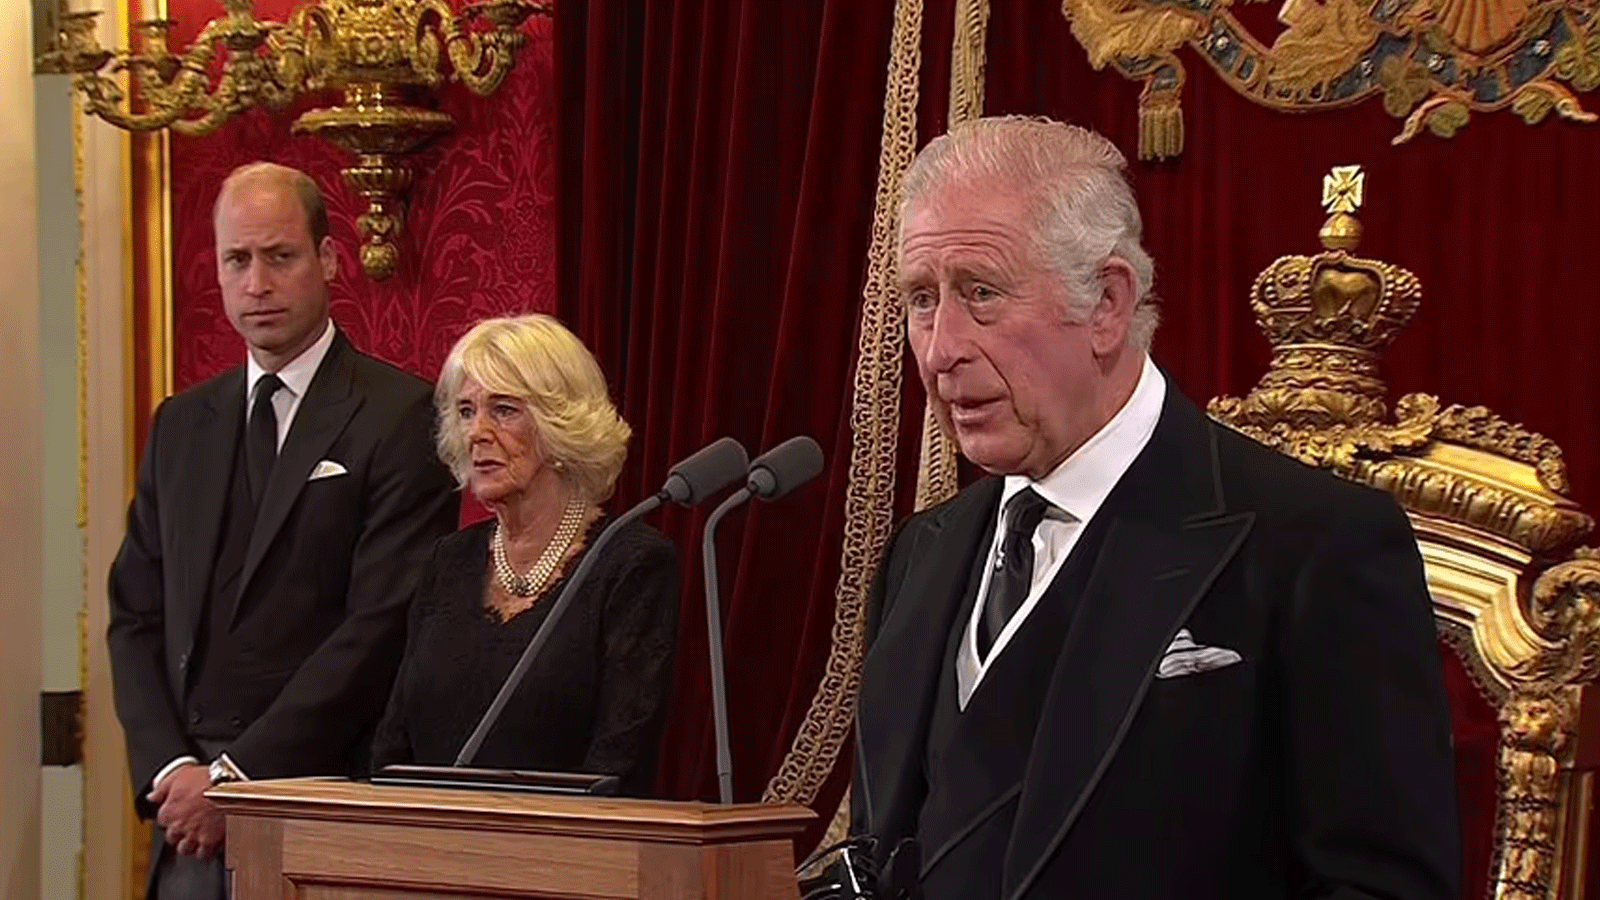 الملك تشارلز الثالث يتحدث بعد اعلان تنصيبه والى جانبه زوجته وولي عهده